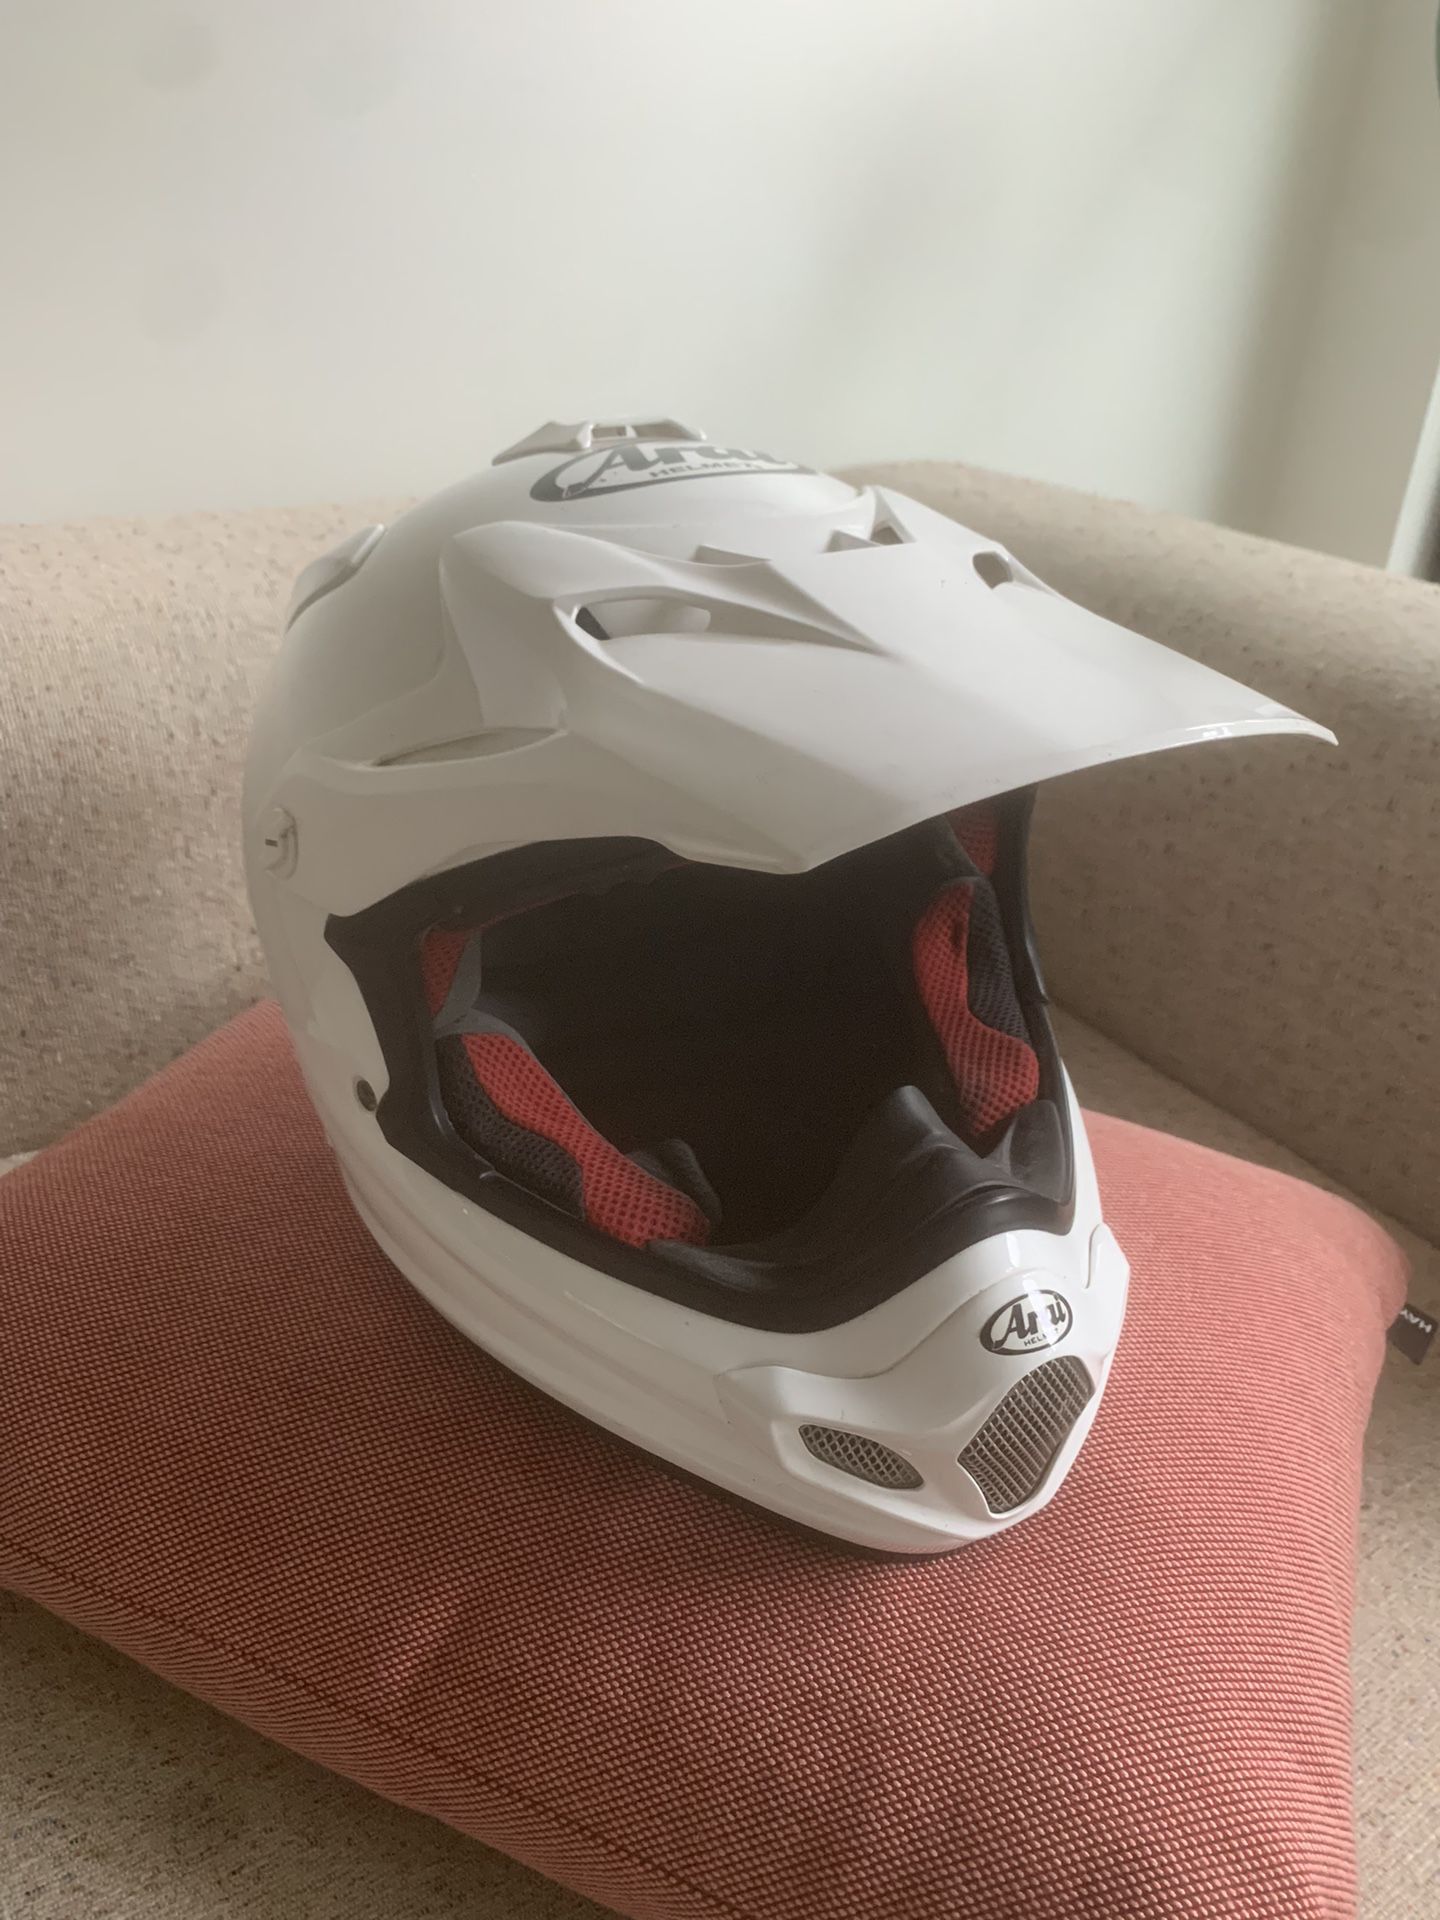 ARAI VX-Pro 4 Helmet